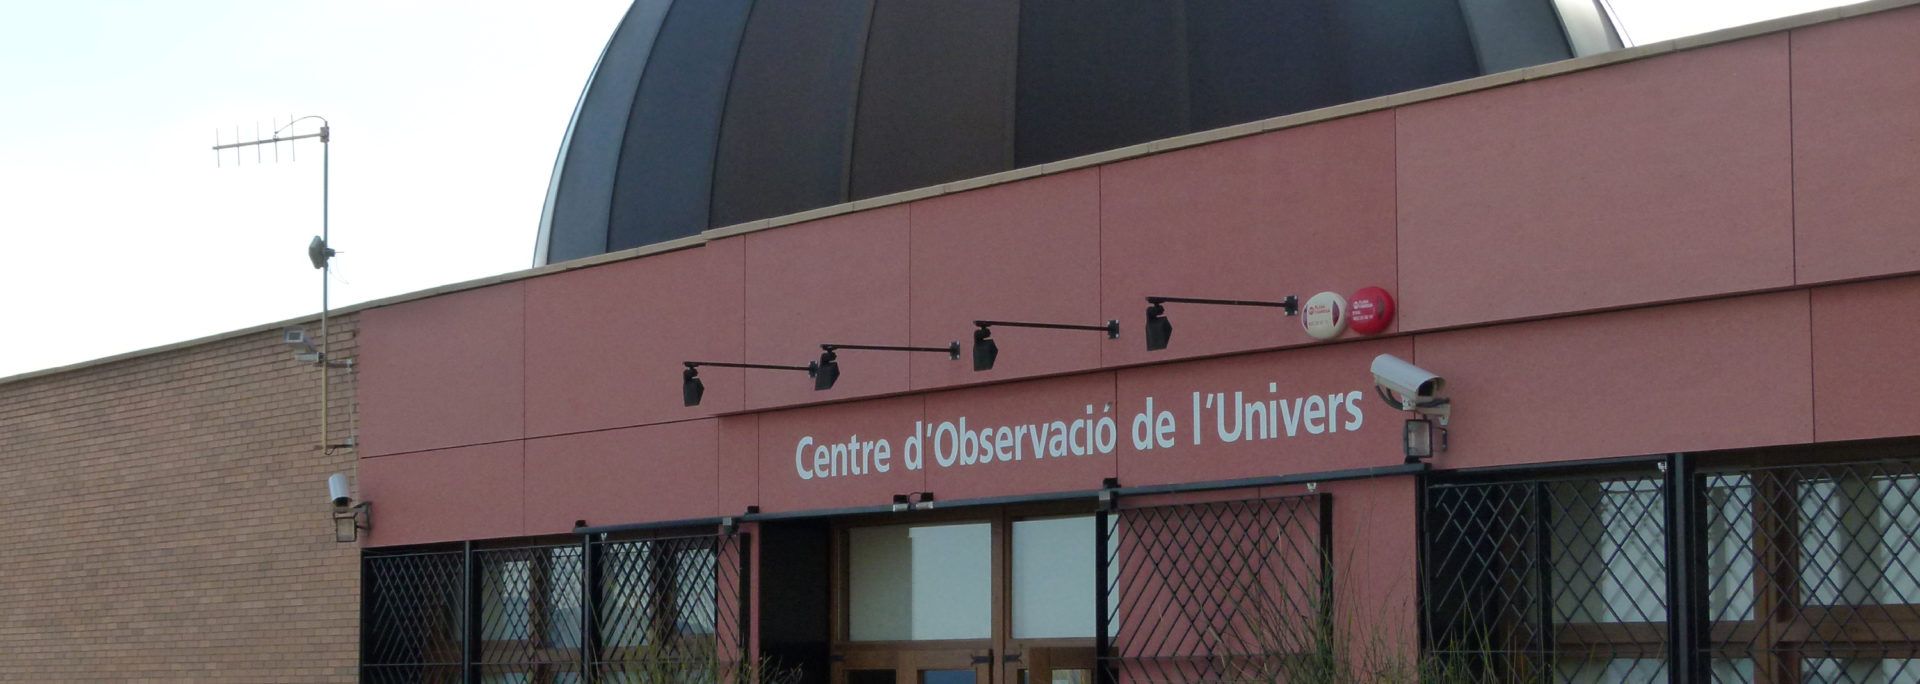 Centro de Observación del Universo, Observatorio del Montsec